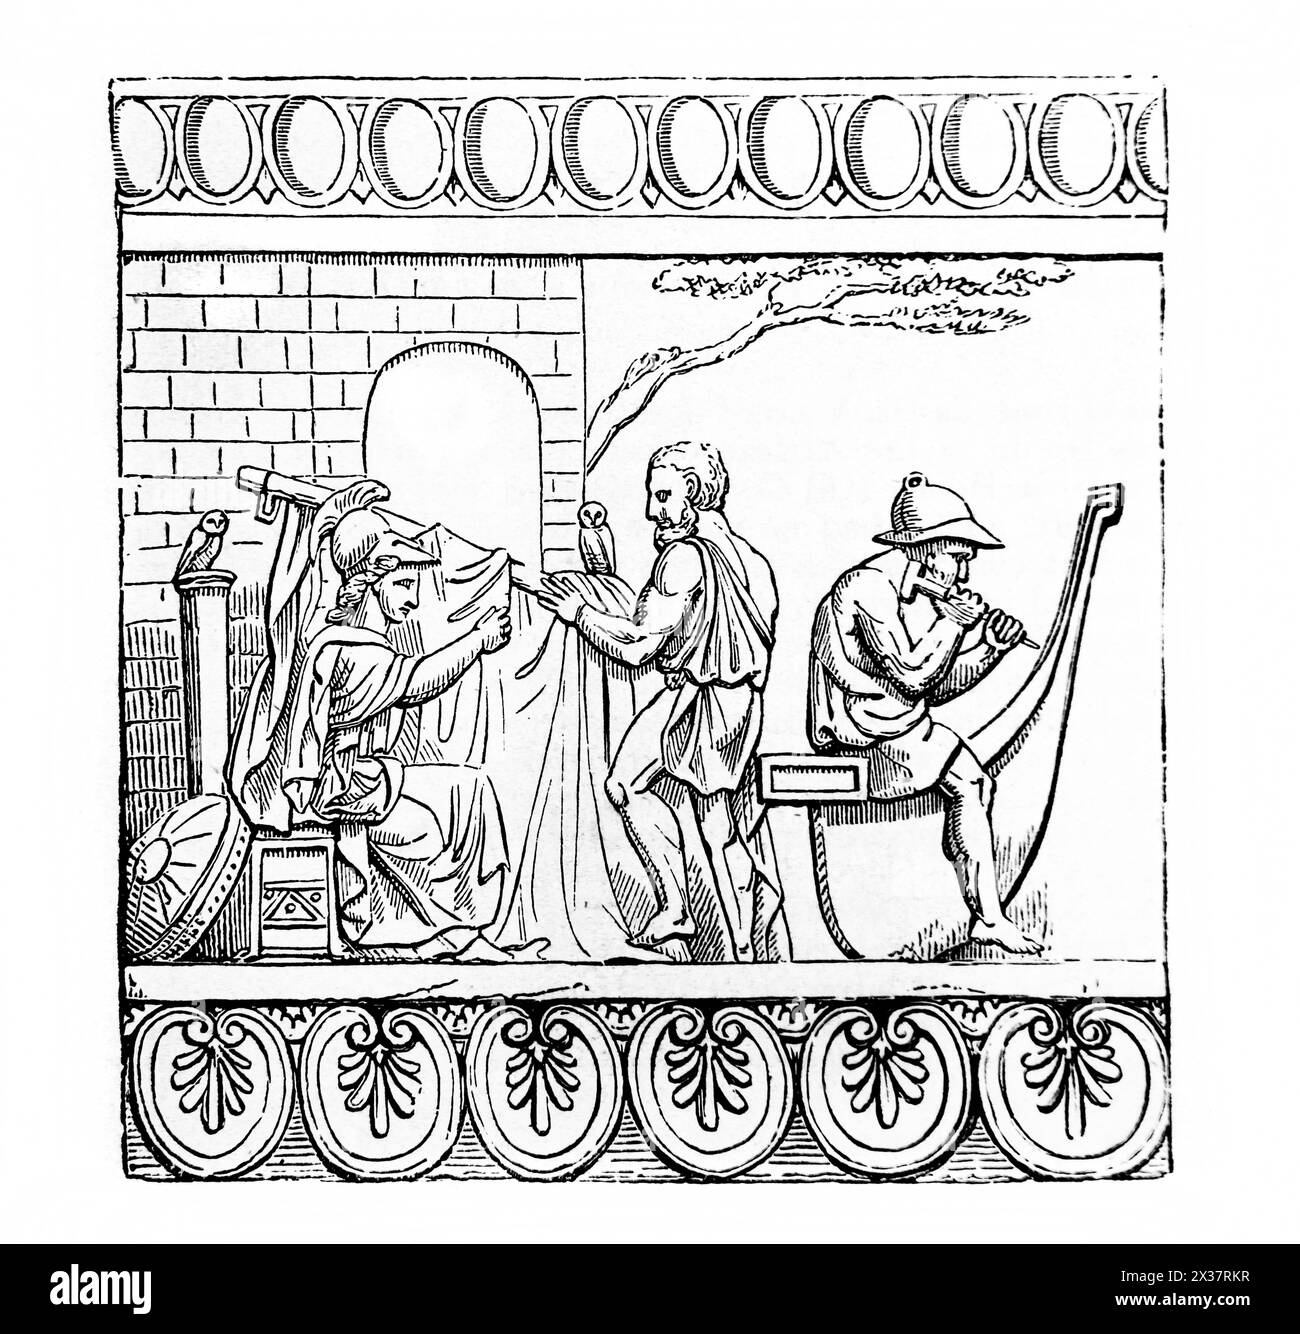 Holzgravur des Gebäudes des Schiffes Argo aus der Townley von einem römischen Terrakotta-Relief von Athena, Argus und Tiphys, die die Argo bauten Stockfoto